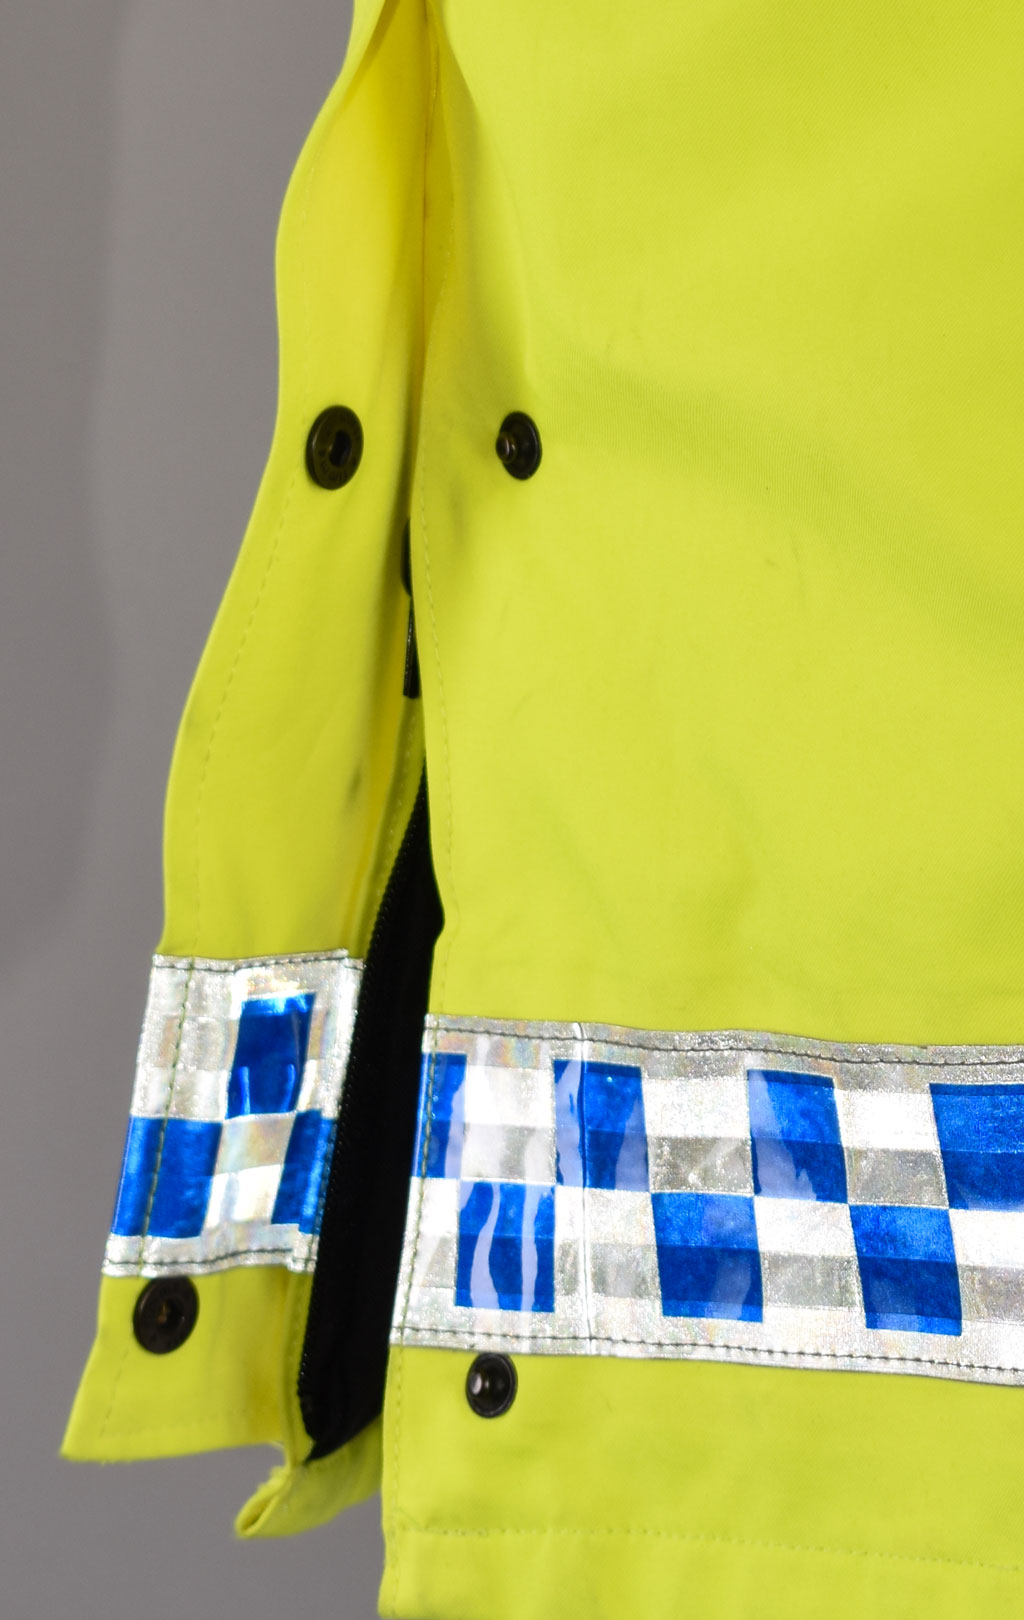 Куртка непромокаемая Gore-Tex POLICE Gore-Tex светоотражающая б/у Англия